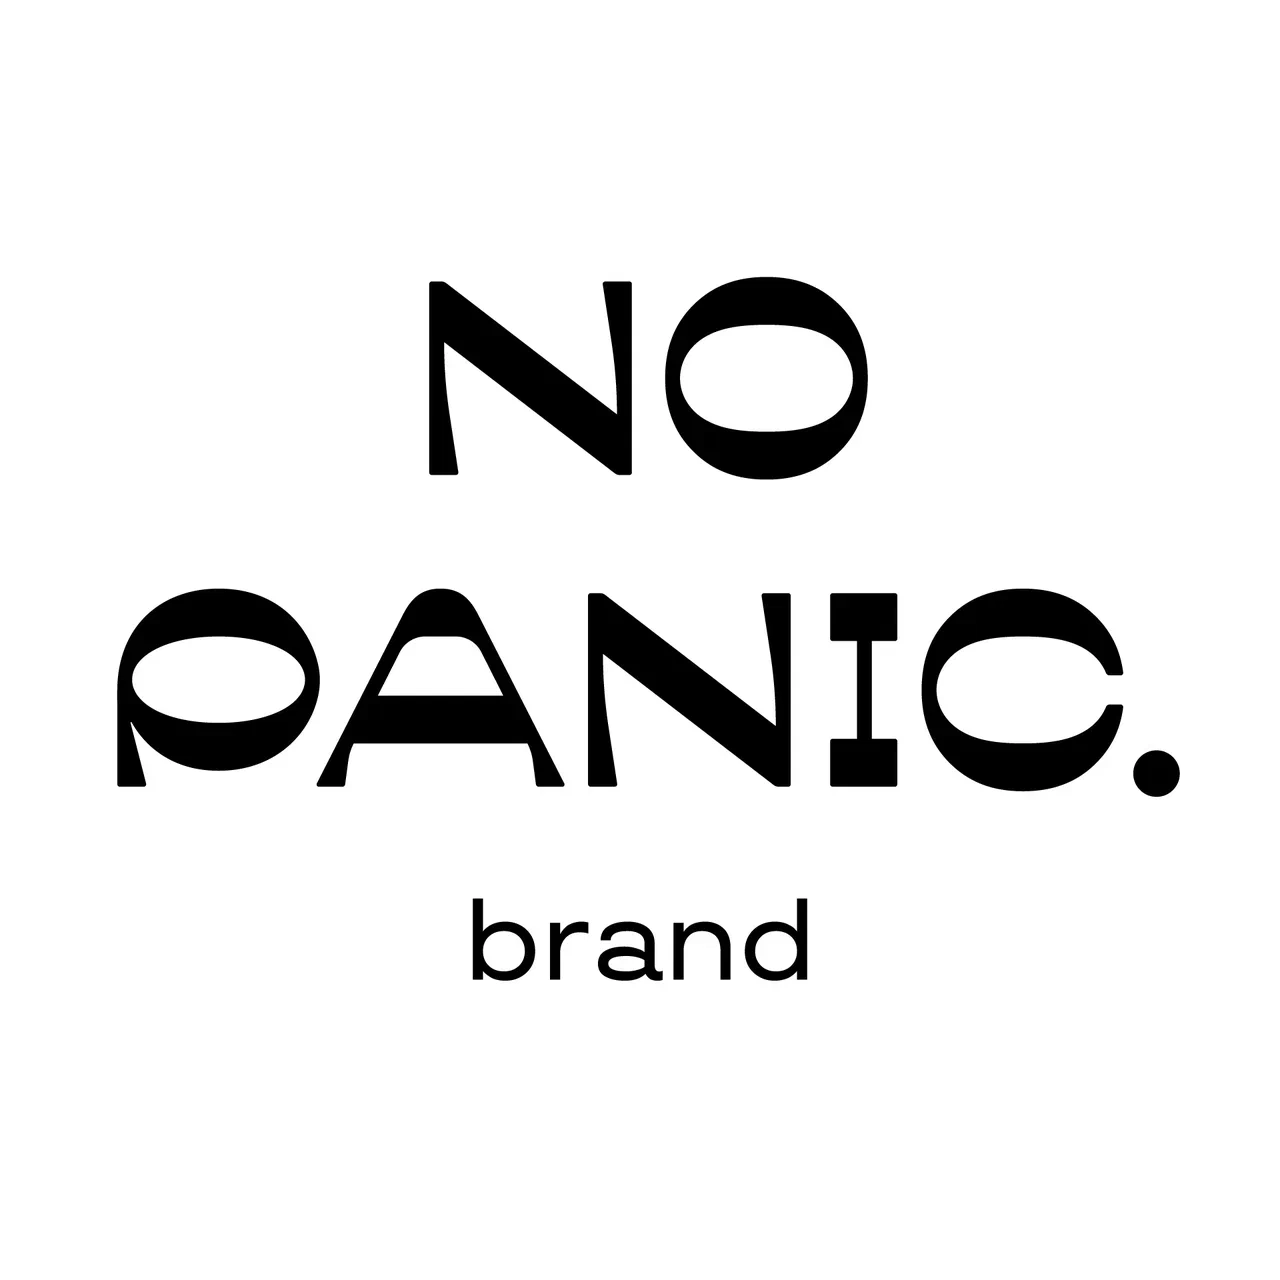 No panic brand